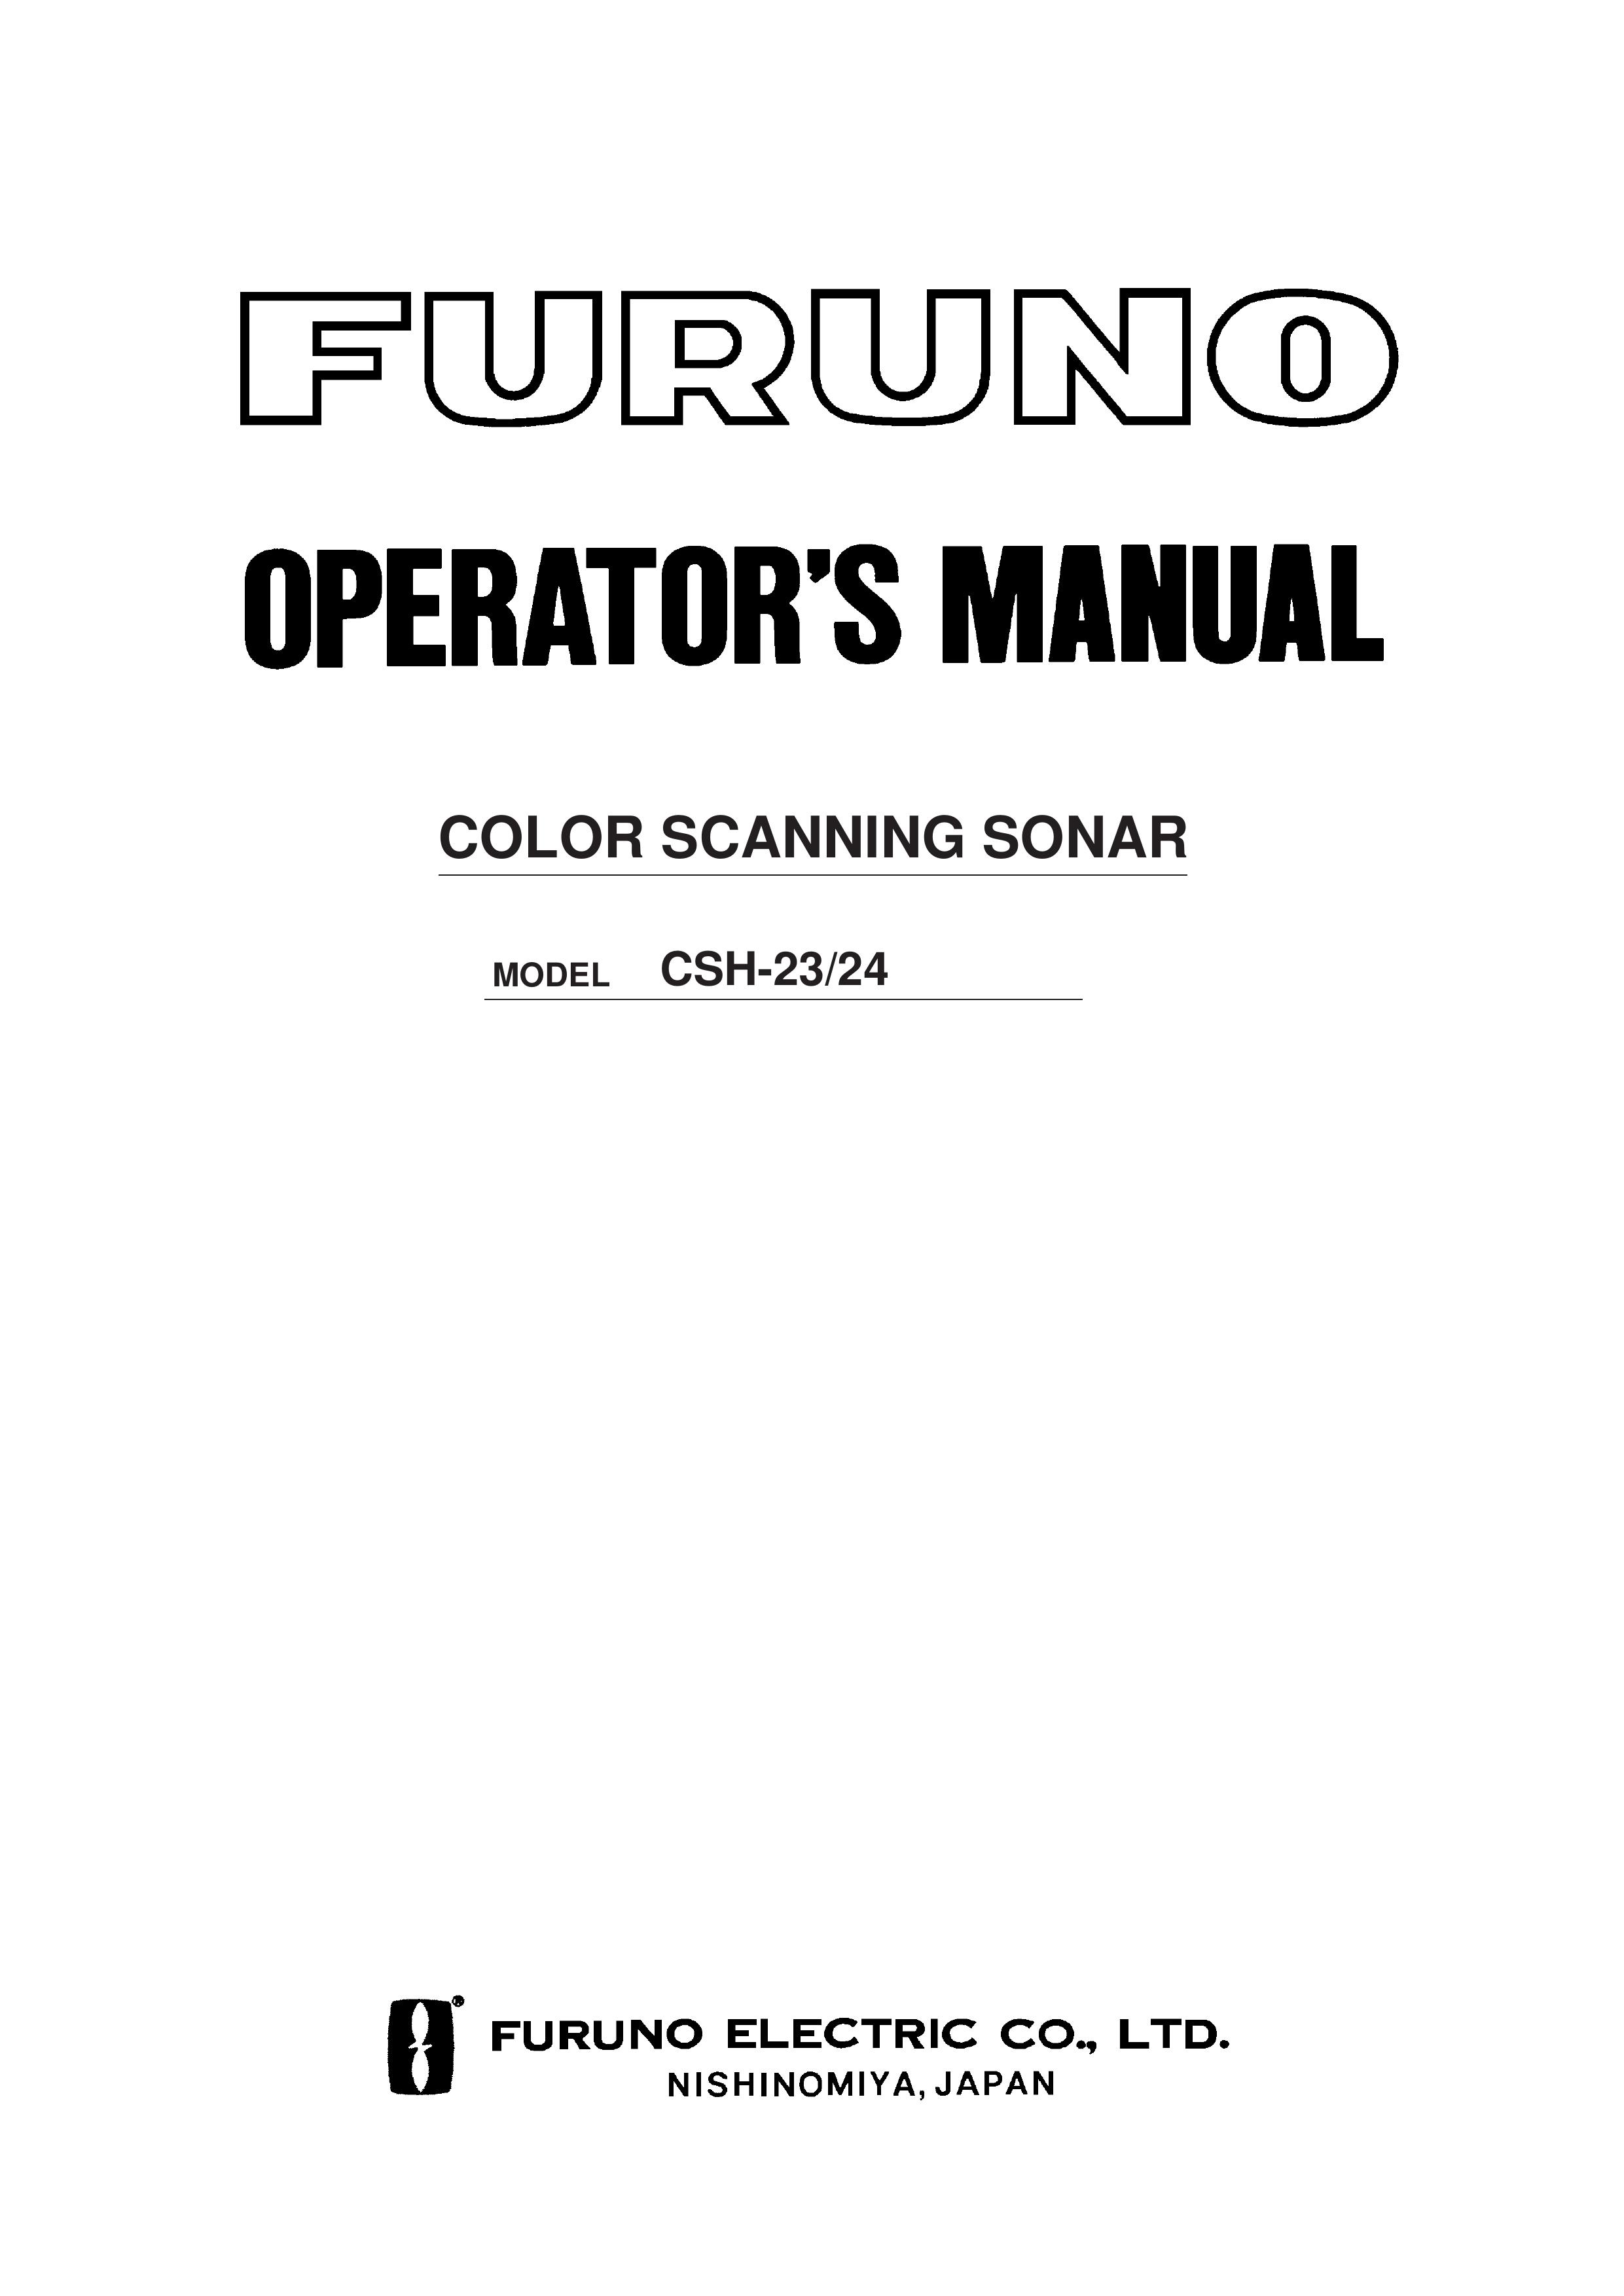 Furuno CSH-23/24 SONAR User Manual